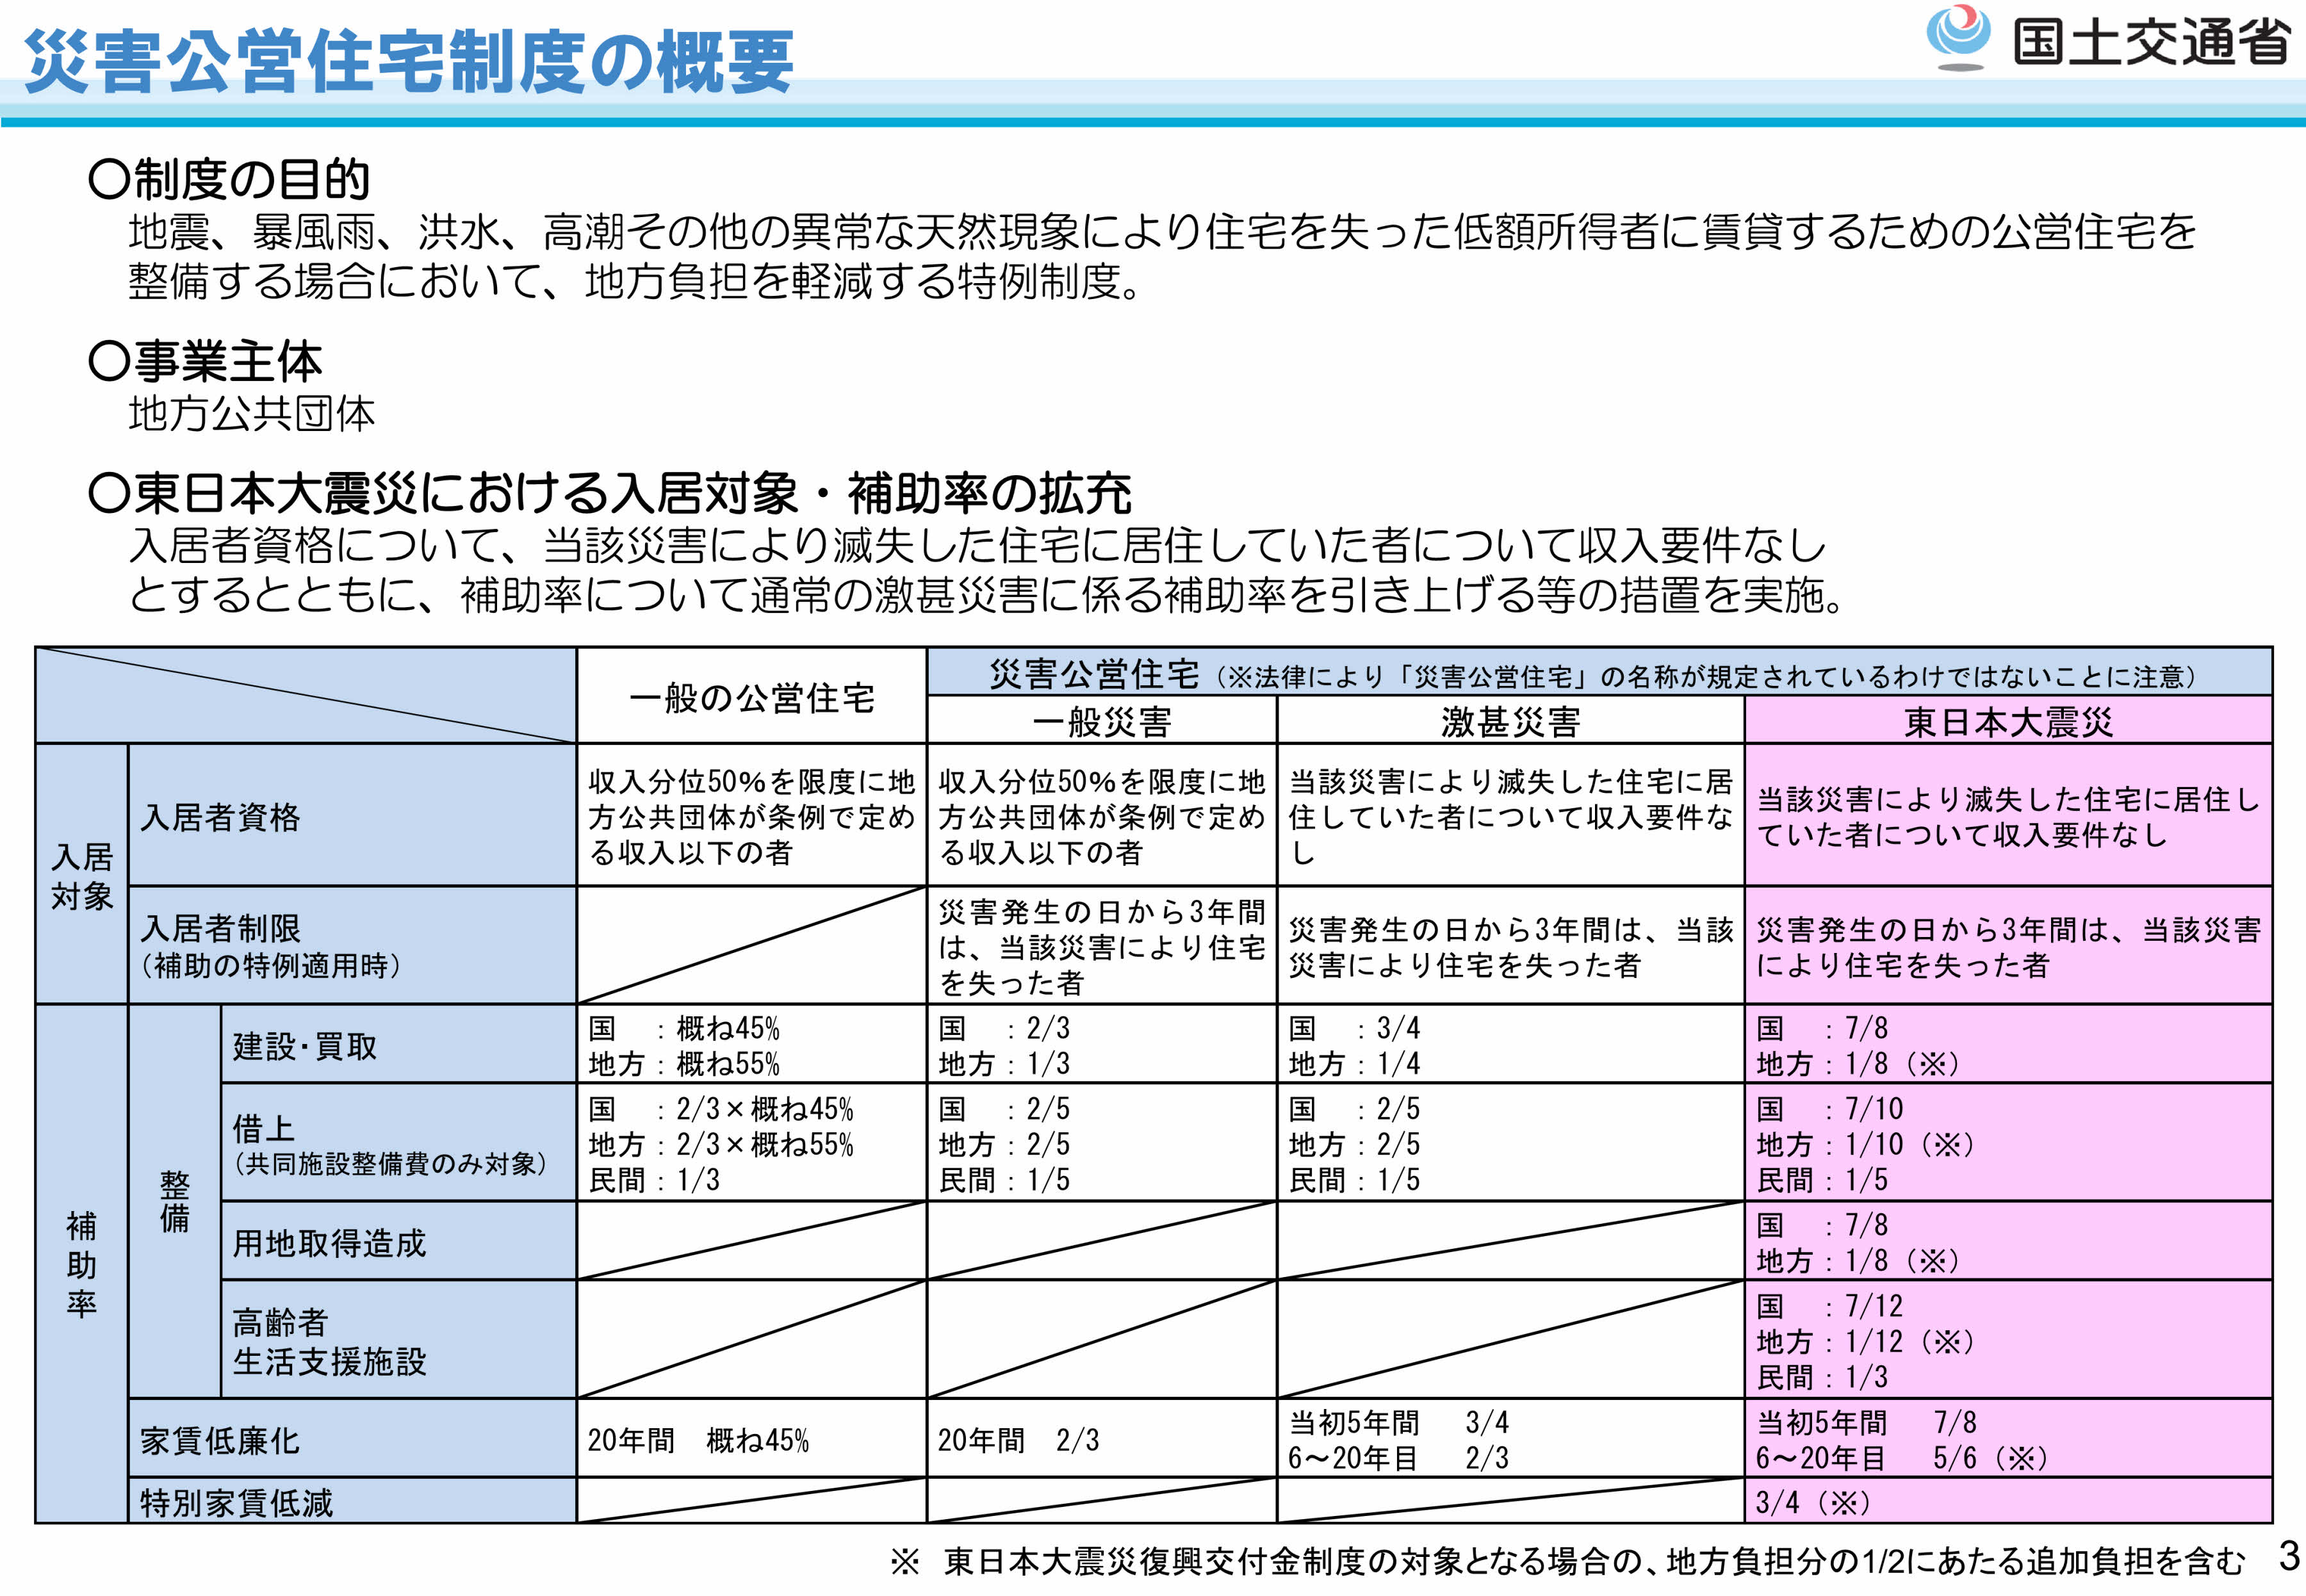 災害公営住宅制度の概要（東日本版）26年5月国交省_page003